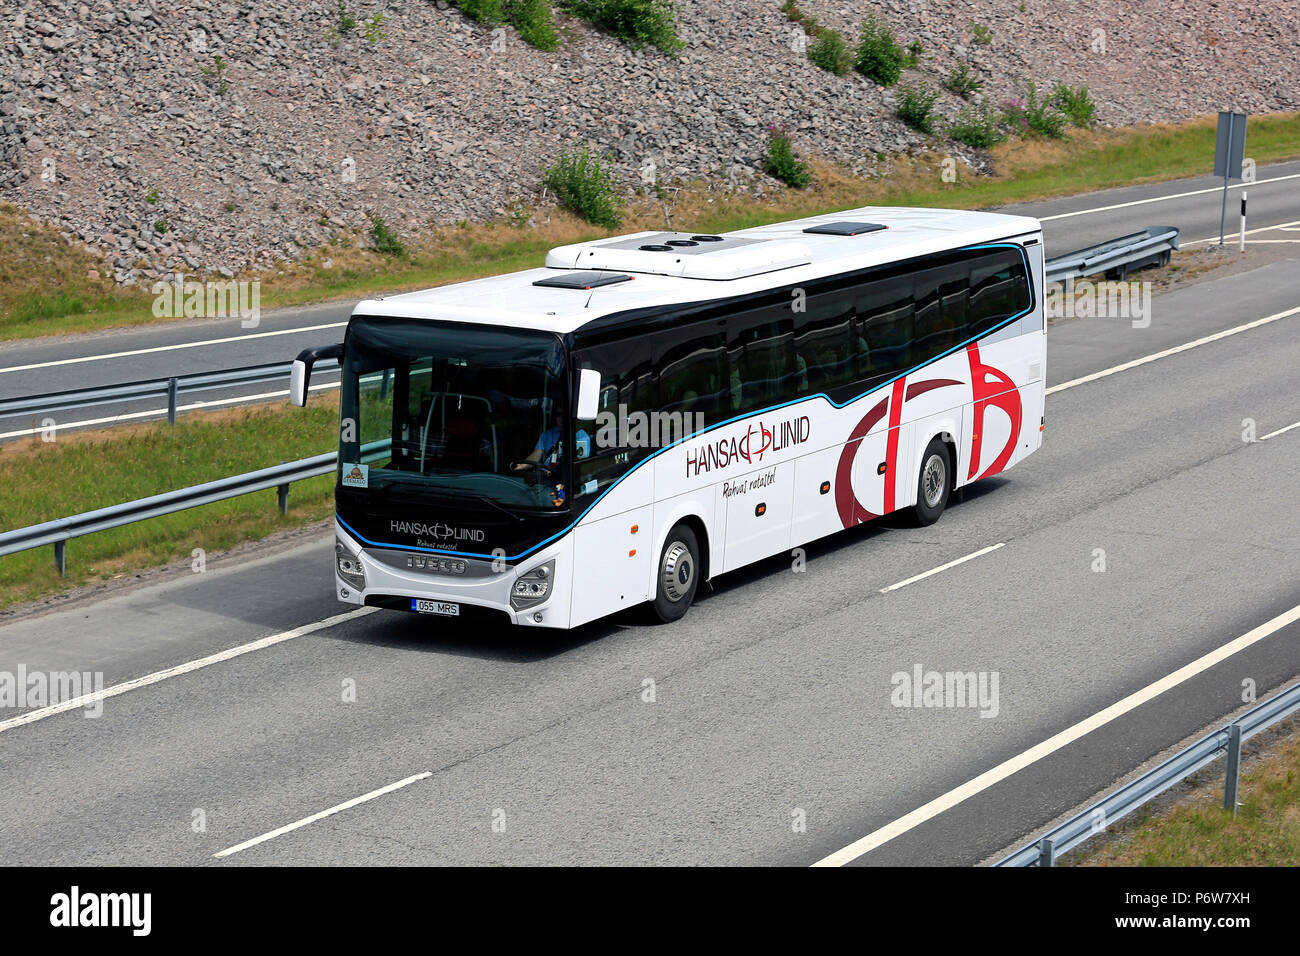 Weißen Iveco Evadys tour bus der Hansa Liinid bringt Passagiere entlang der Autobahn. Salo, Finnland - 30. Juni 2018. Stockfoto